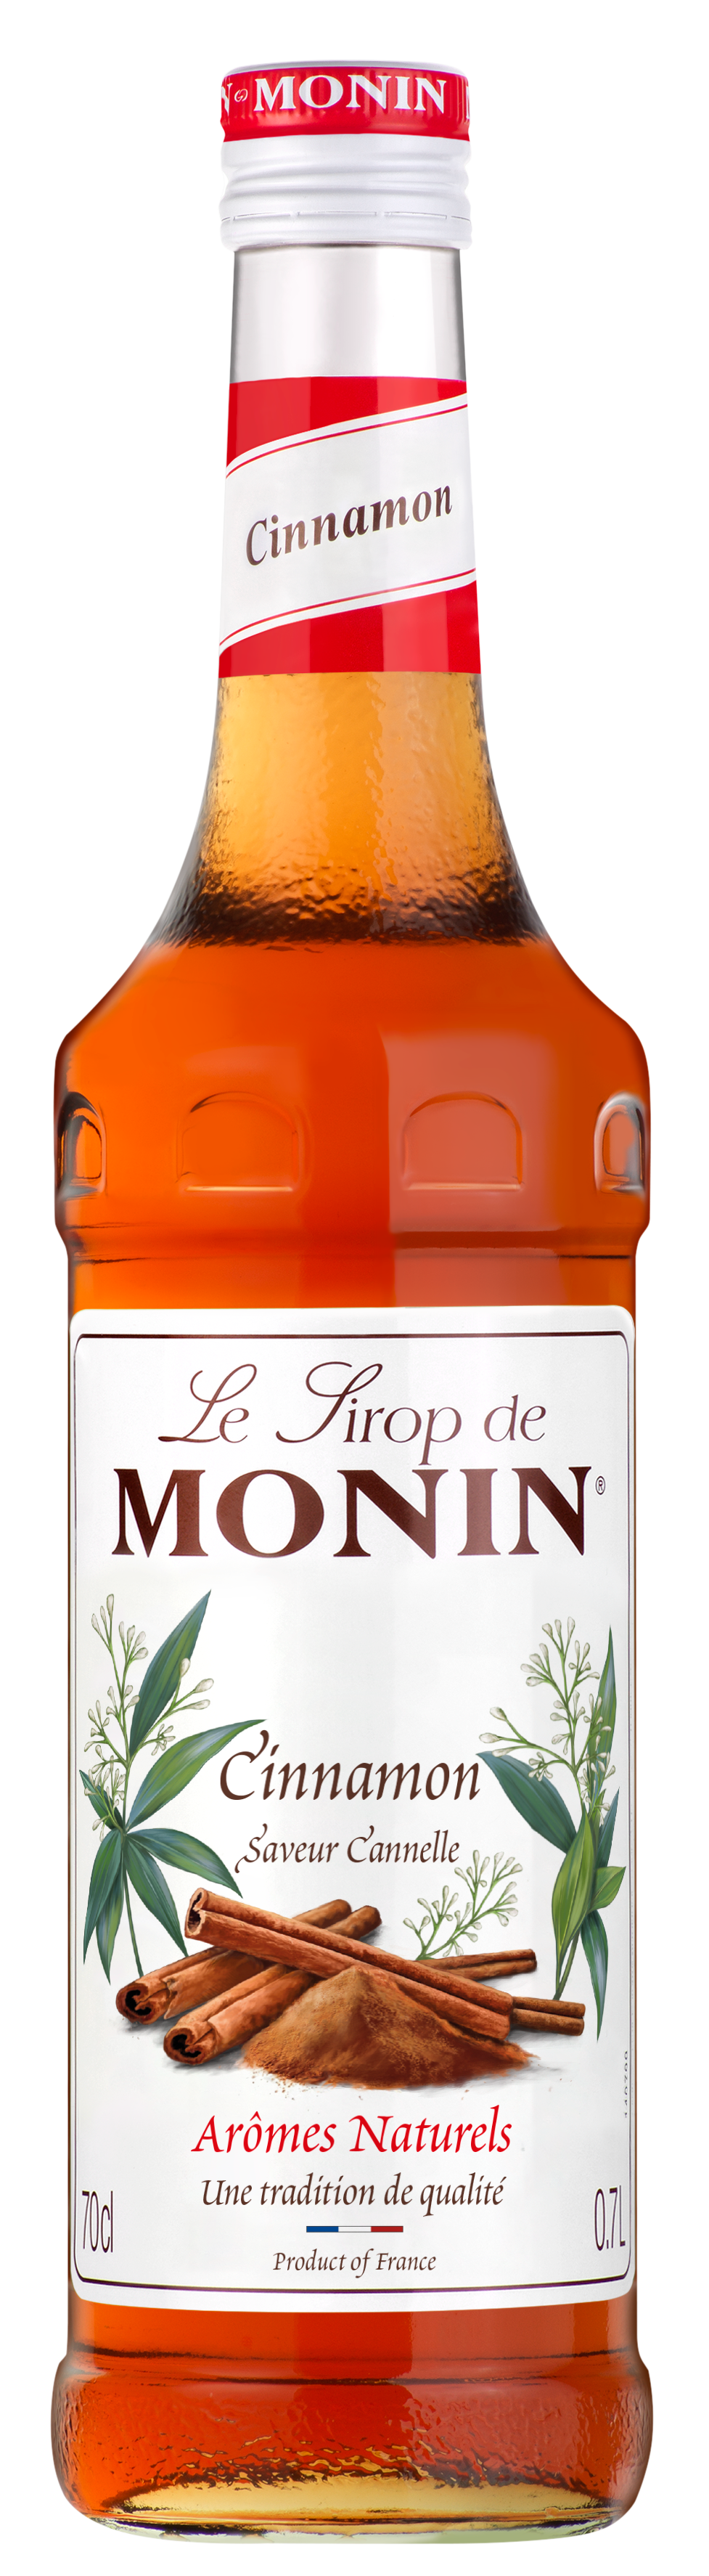 MONIN Cinnamon Syrup